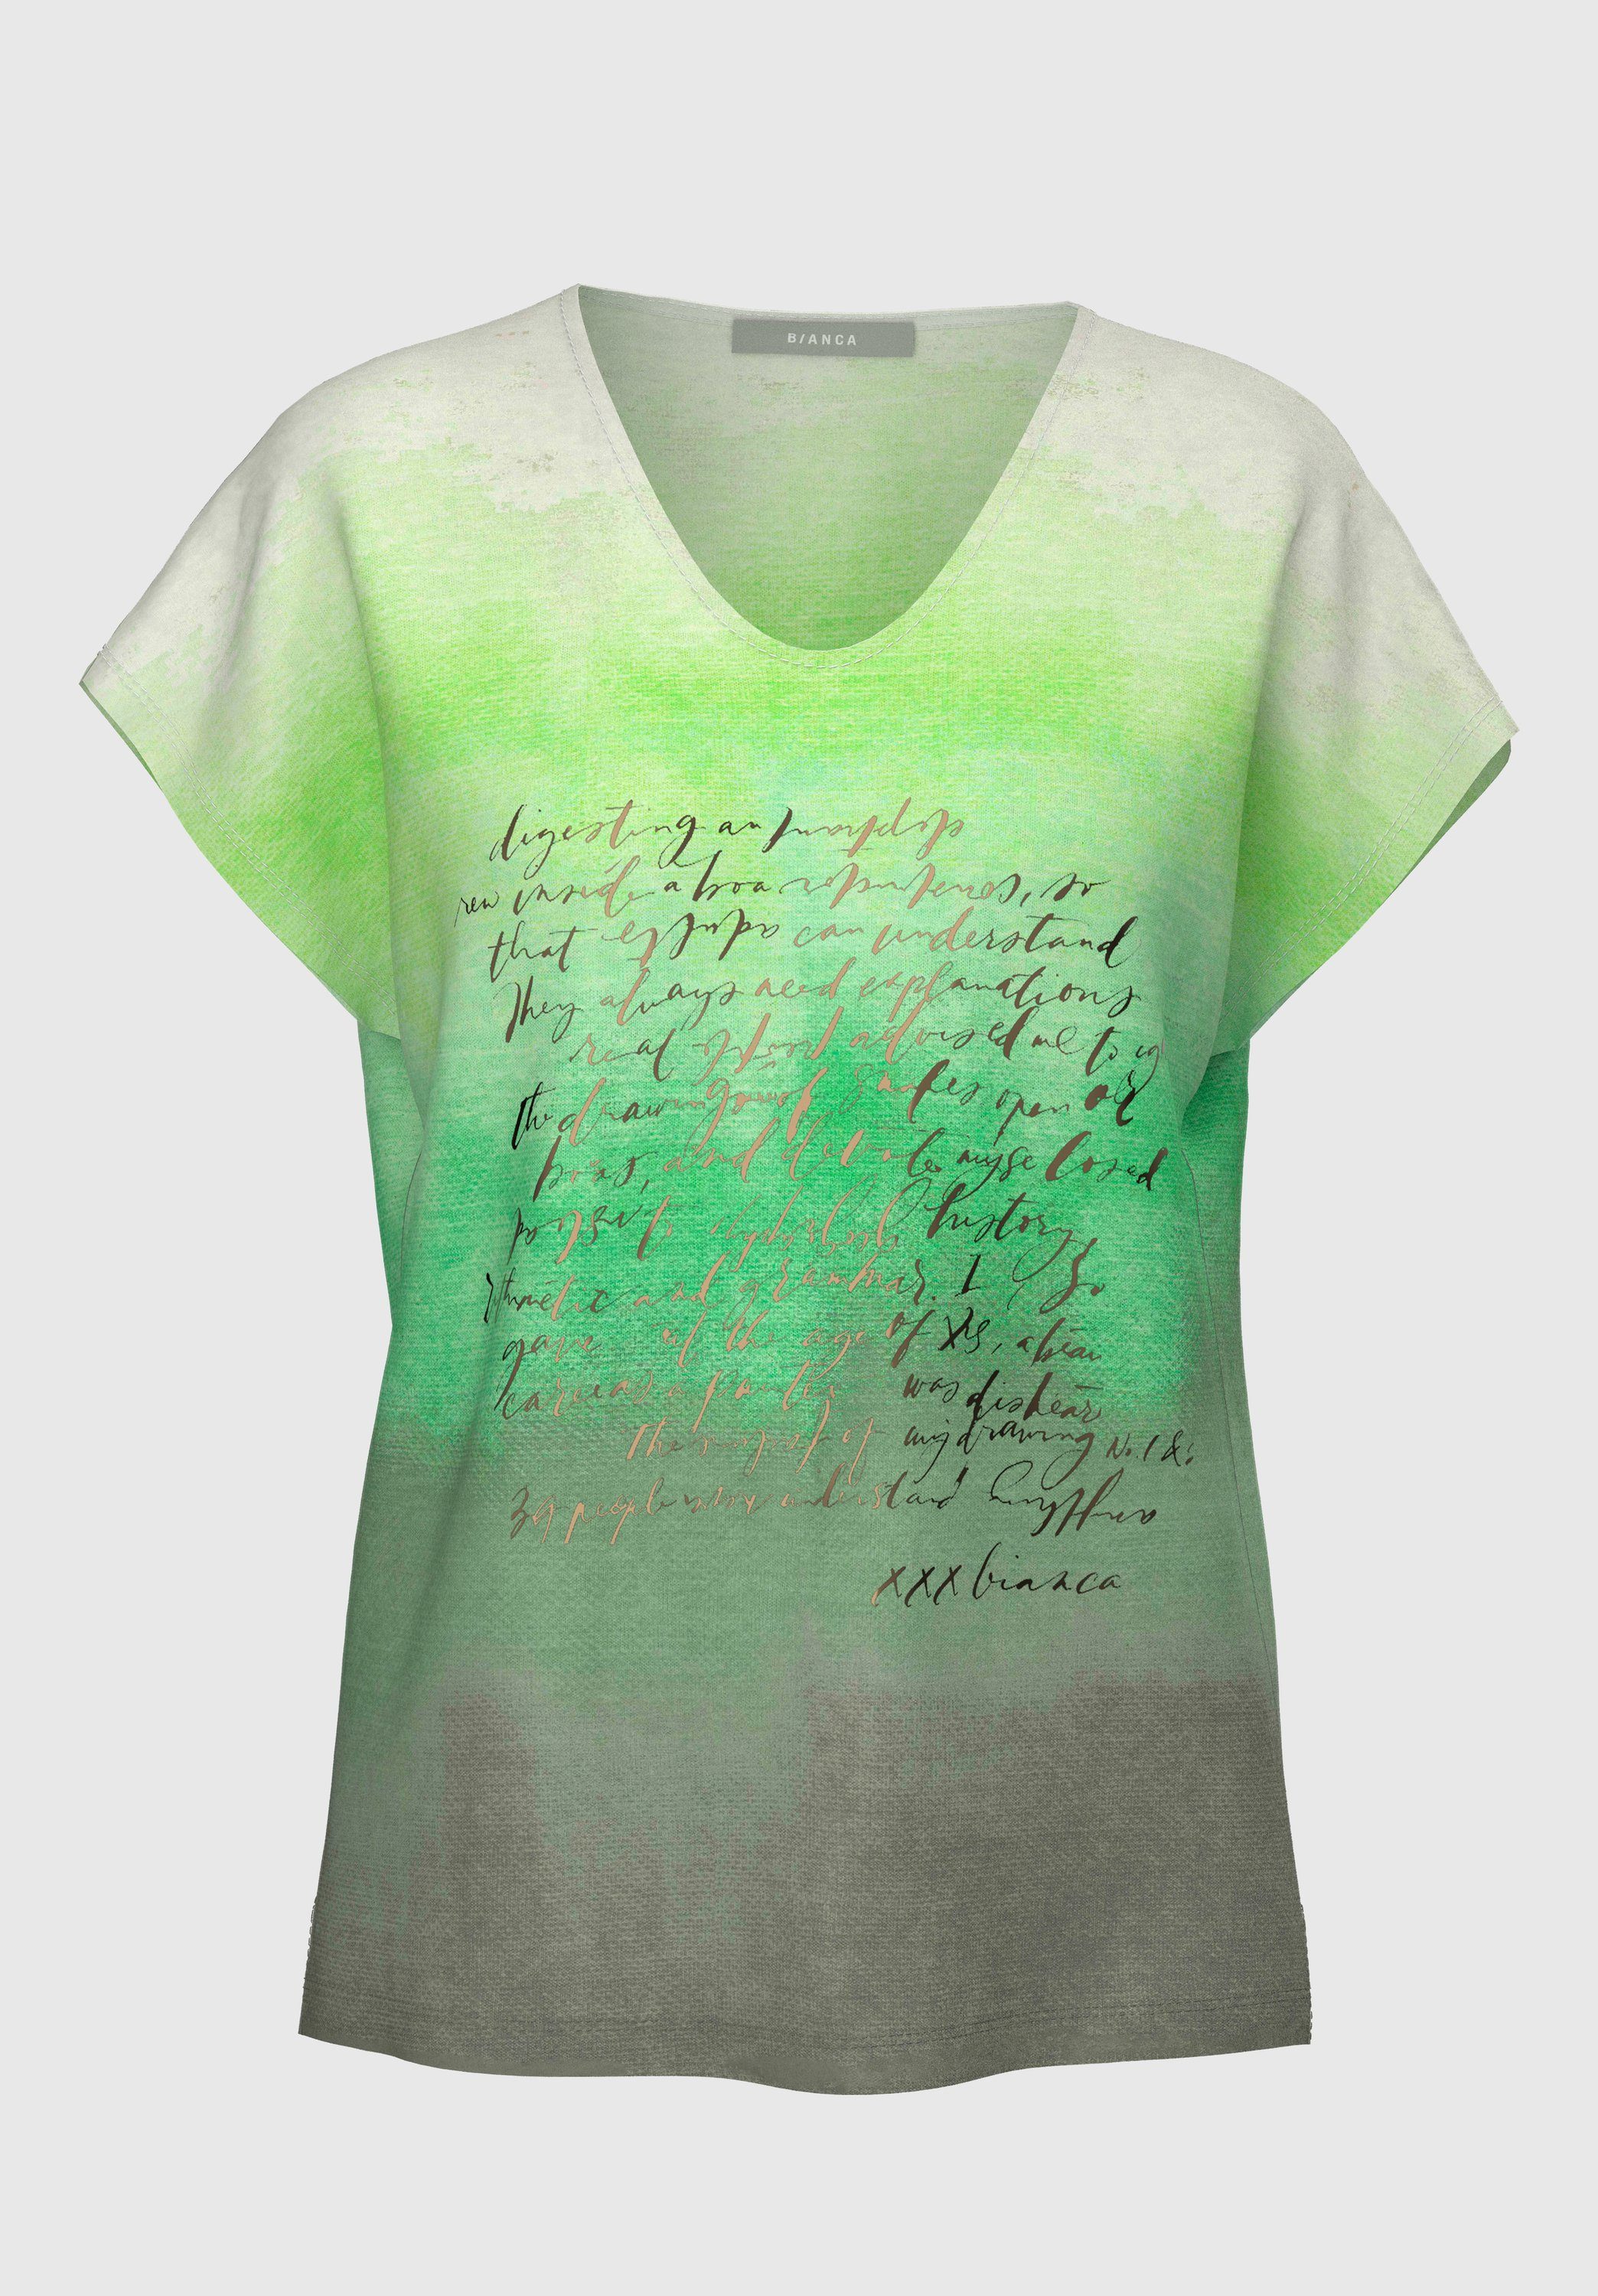 bianca Print-Shirt JULIE in absoluten Trendfarben mit coolem Frontmotiv green mix